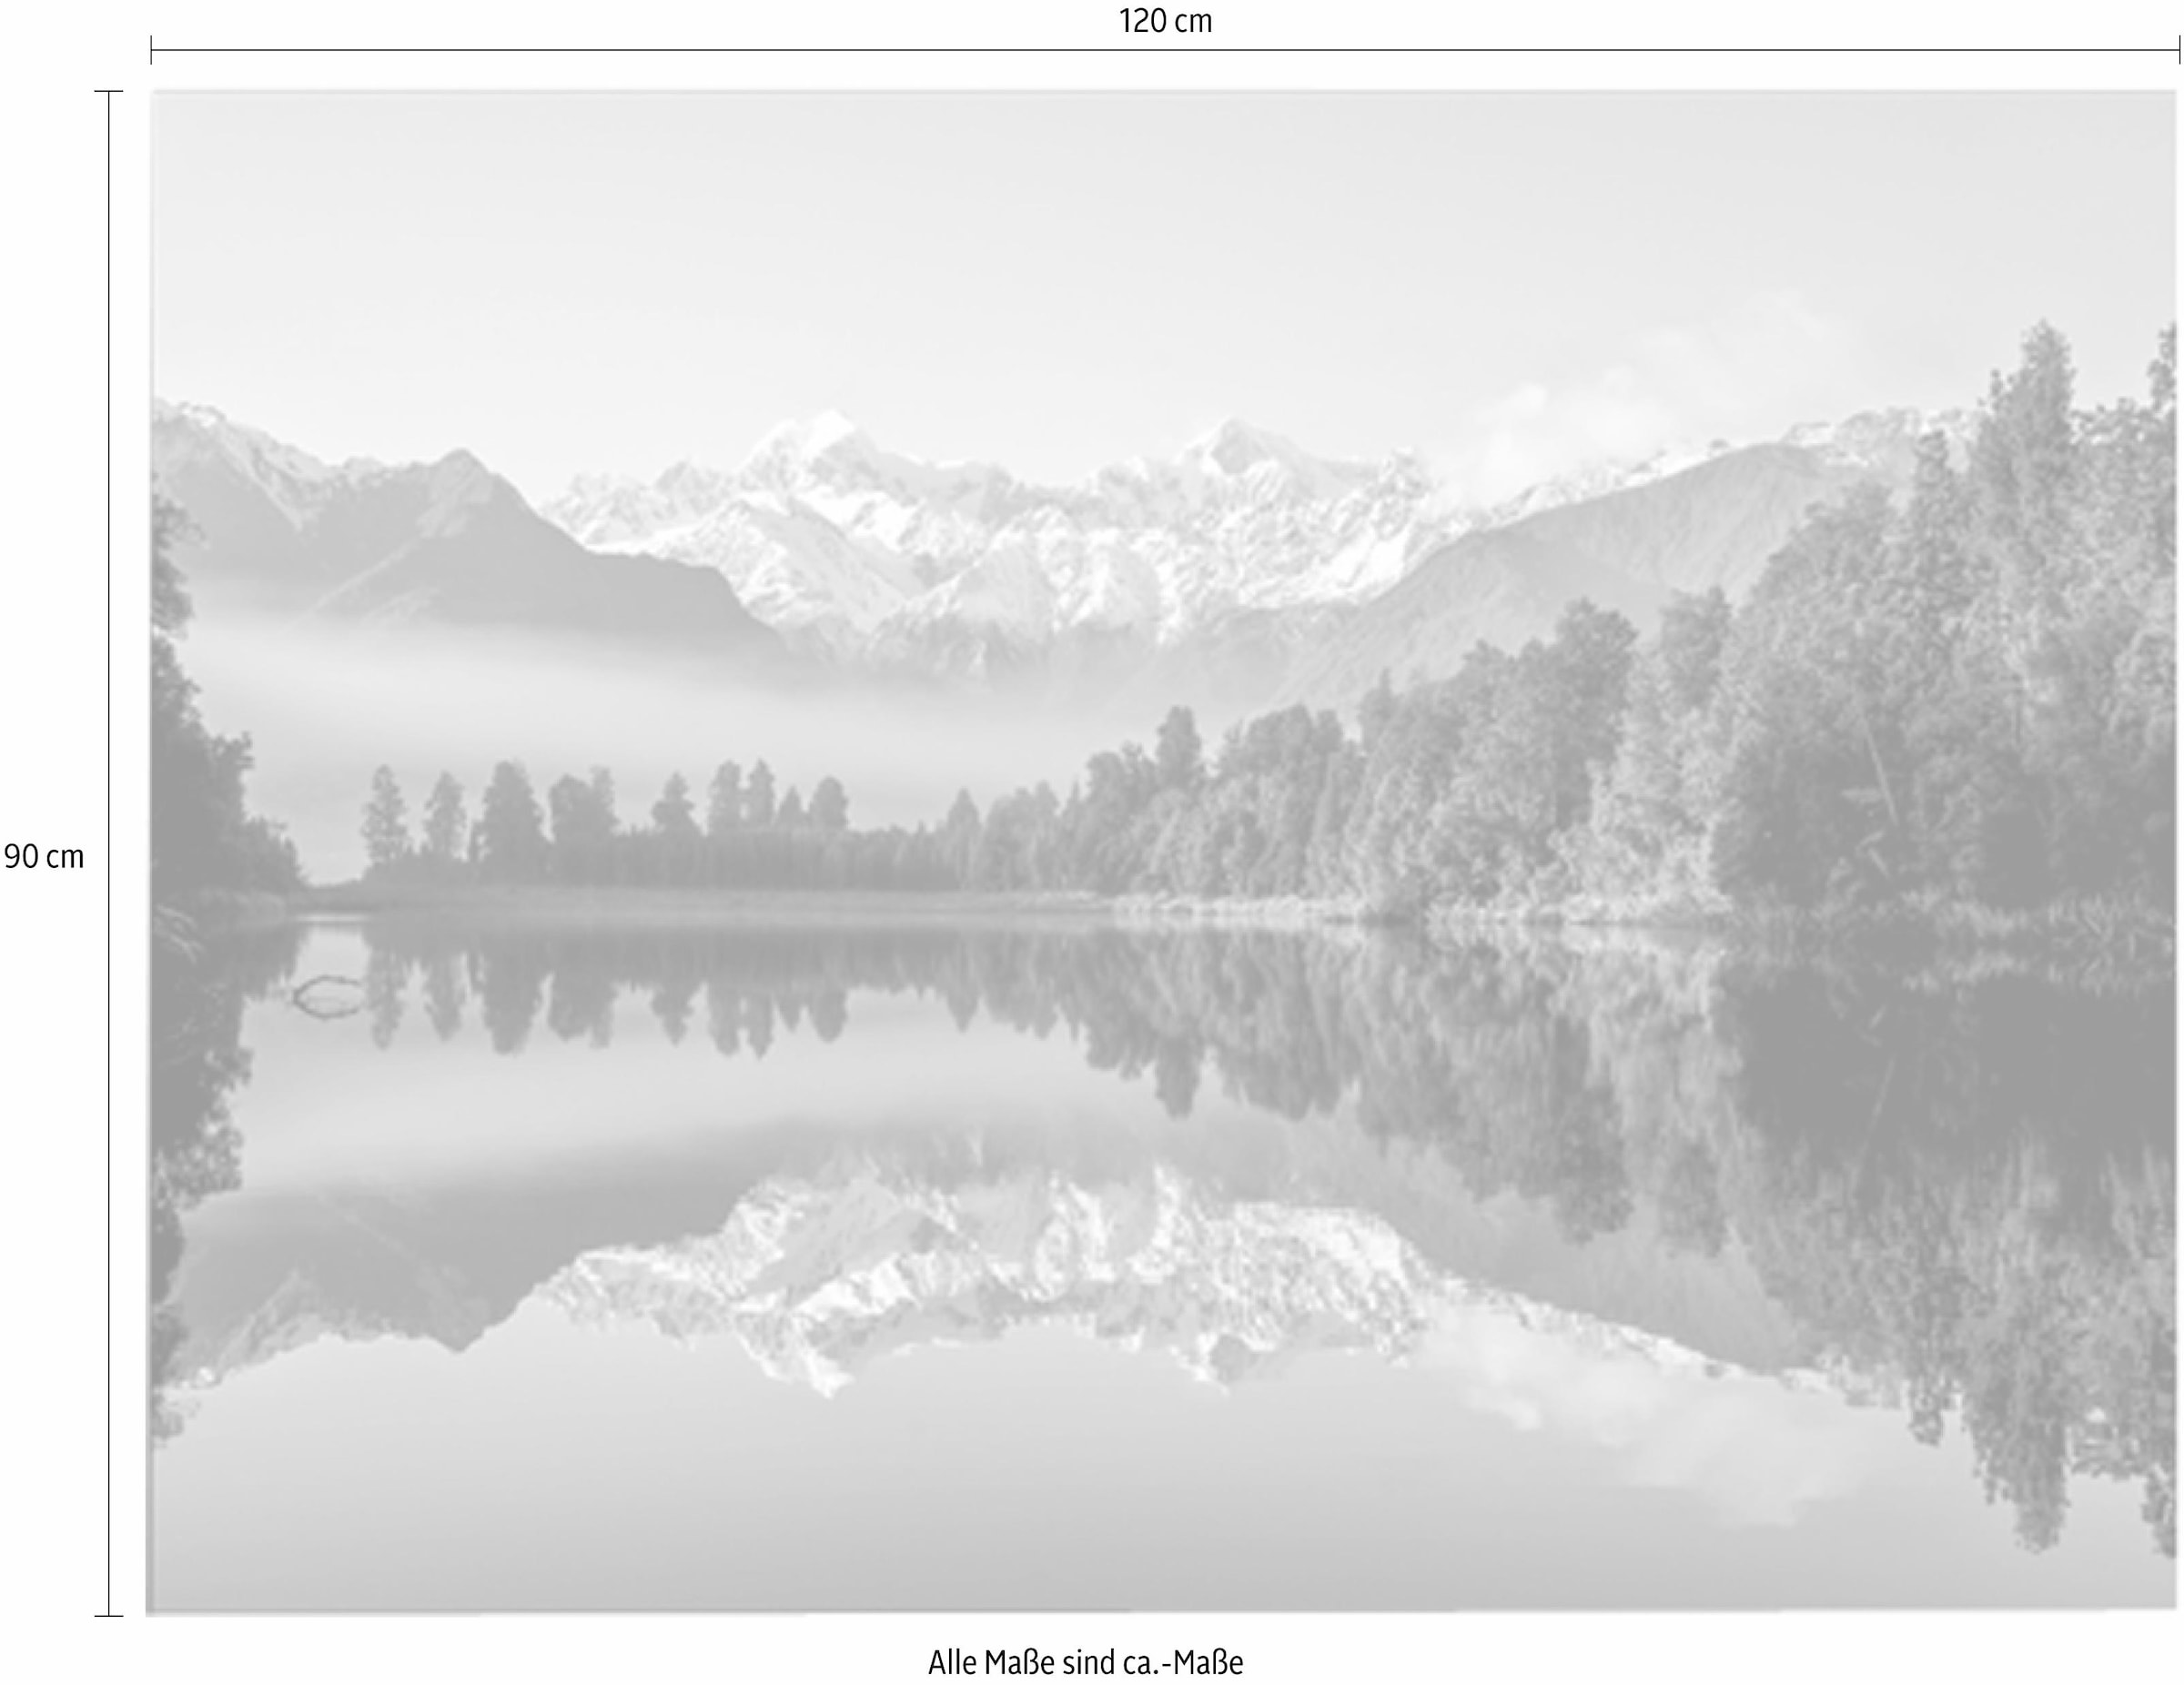 Home affaire Neuseeland«, Zealand jetzt »New kaufen Leinwandbild 120/90 cm - Natur-Wald-Berge-Landschaft,